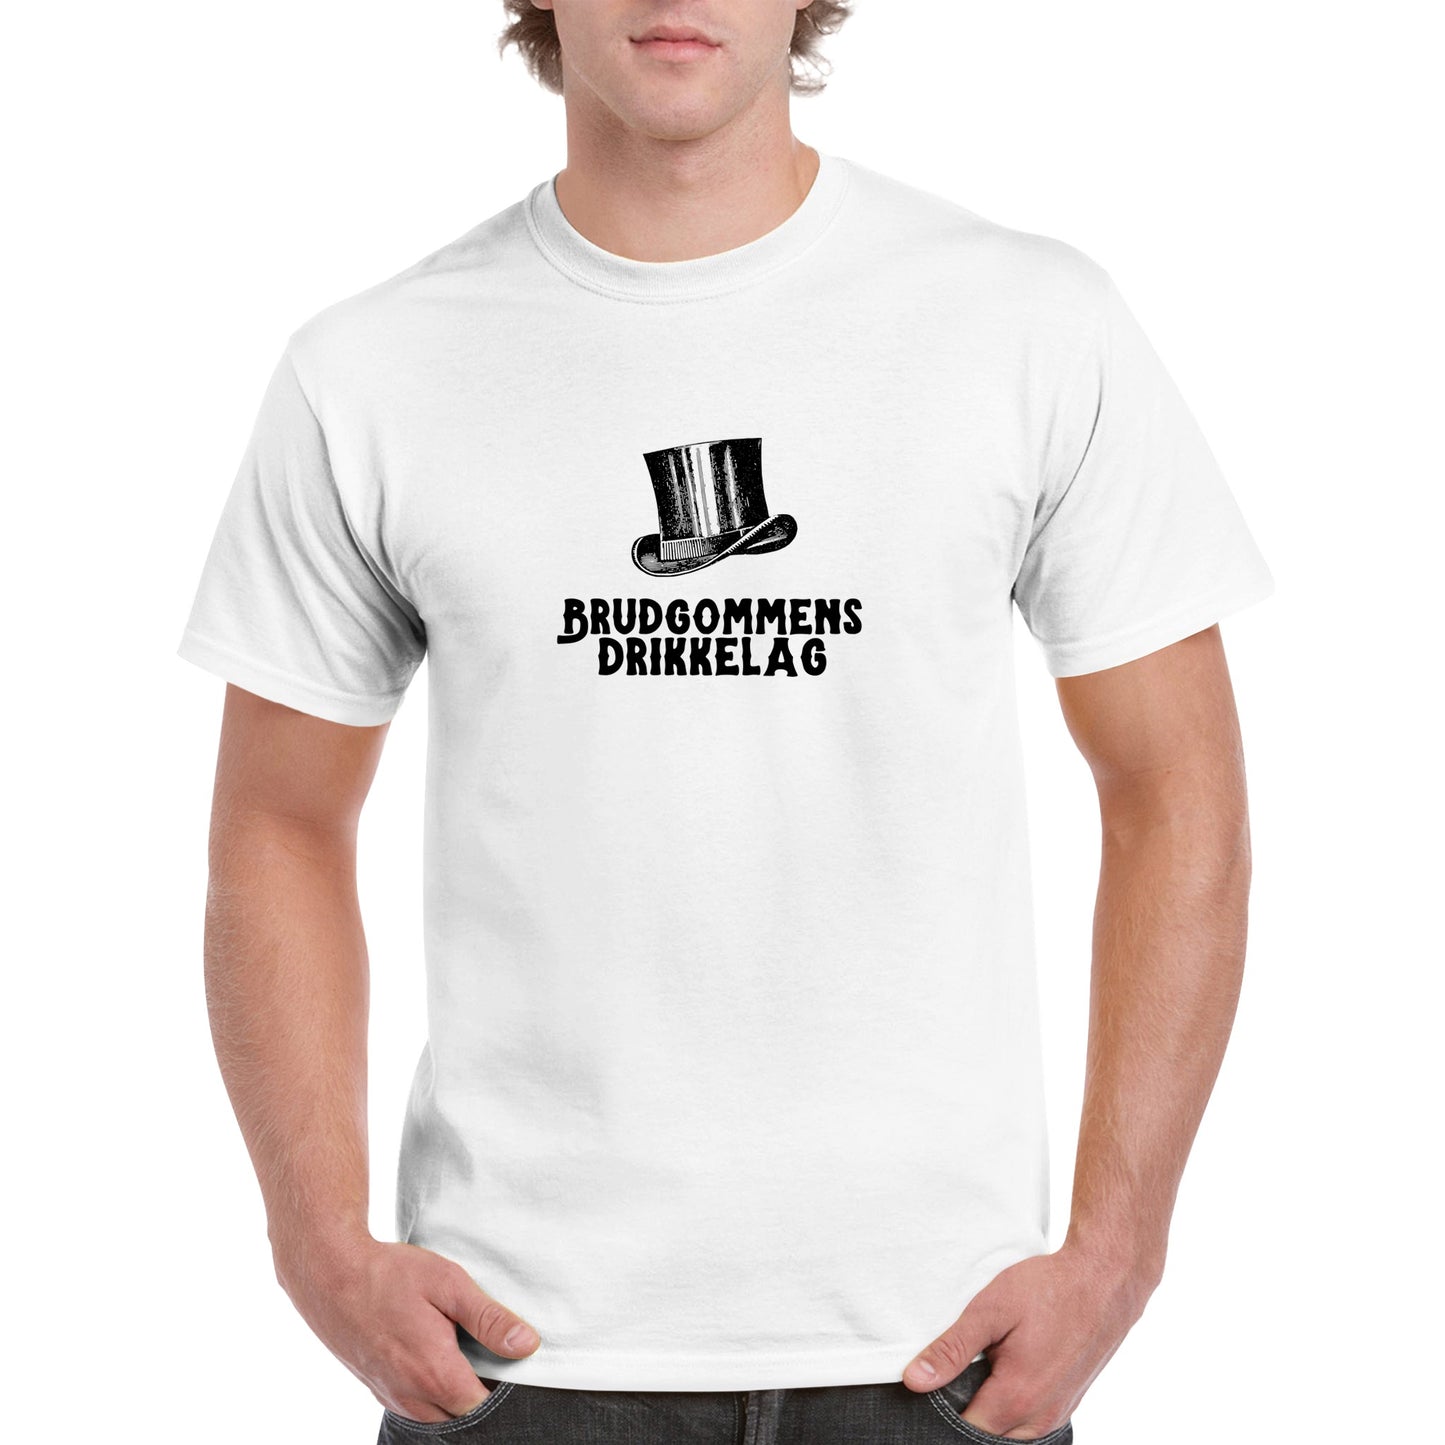 T-skjorte - "Brudgommens drikkelag"